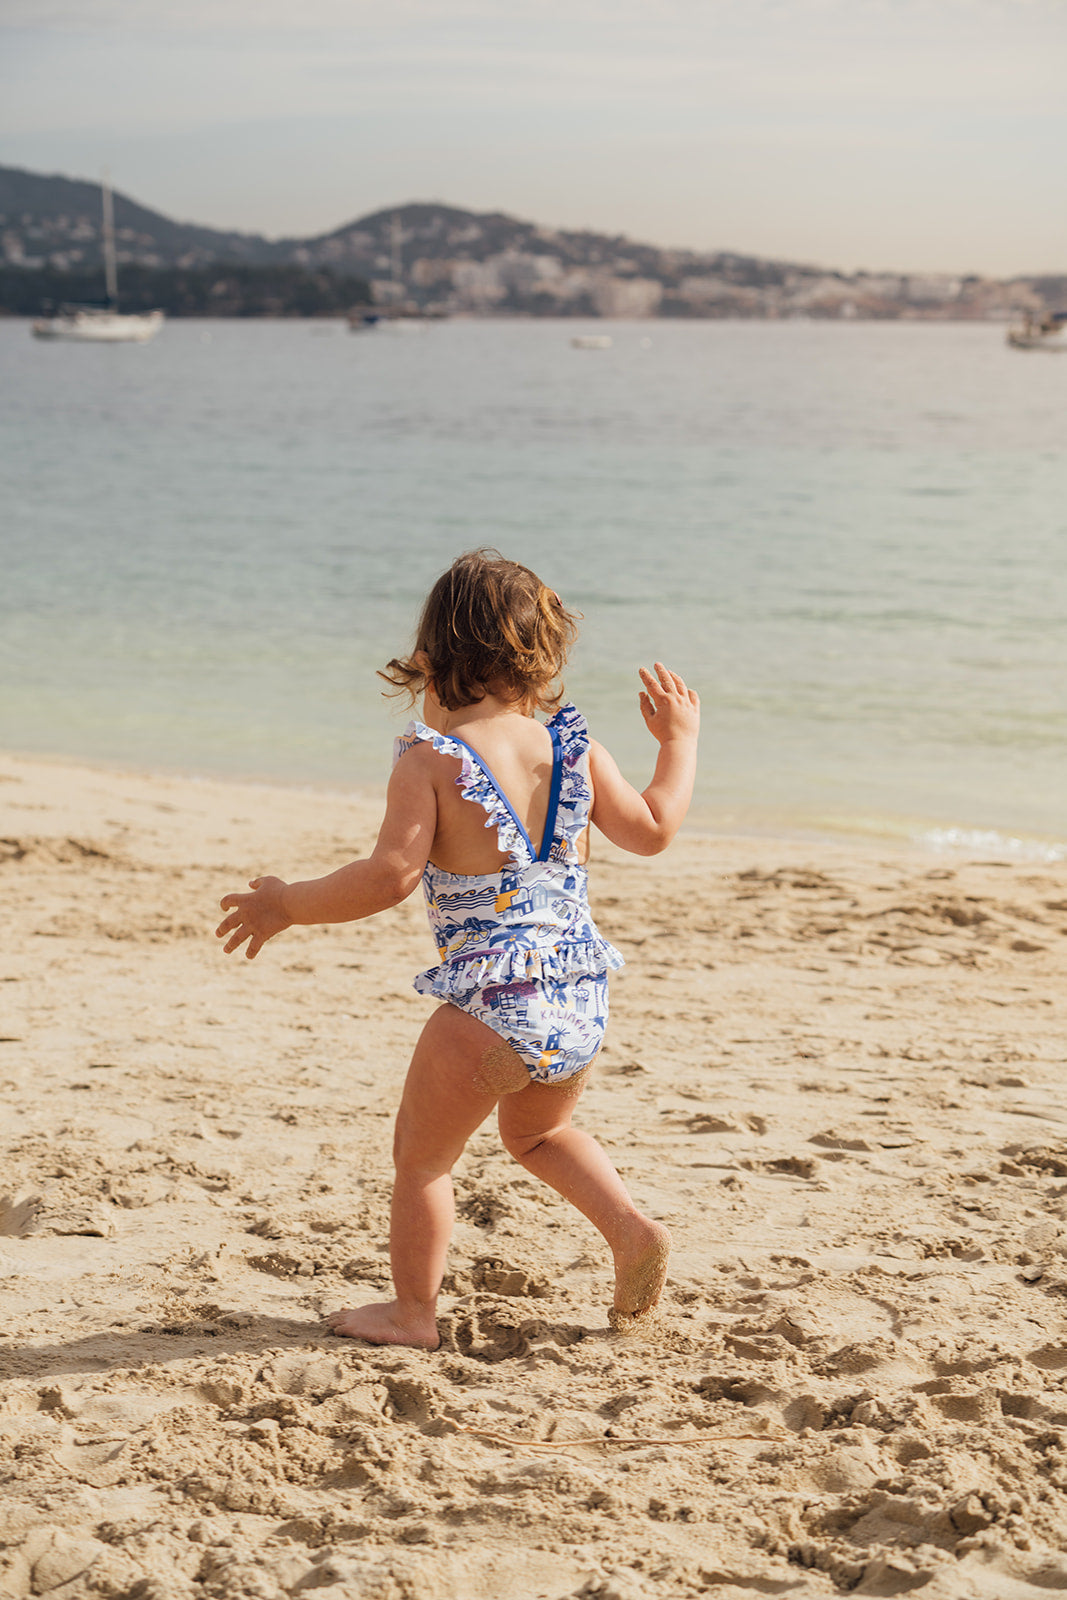 Baby girl's one-piece swimsuit, Greek pattern